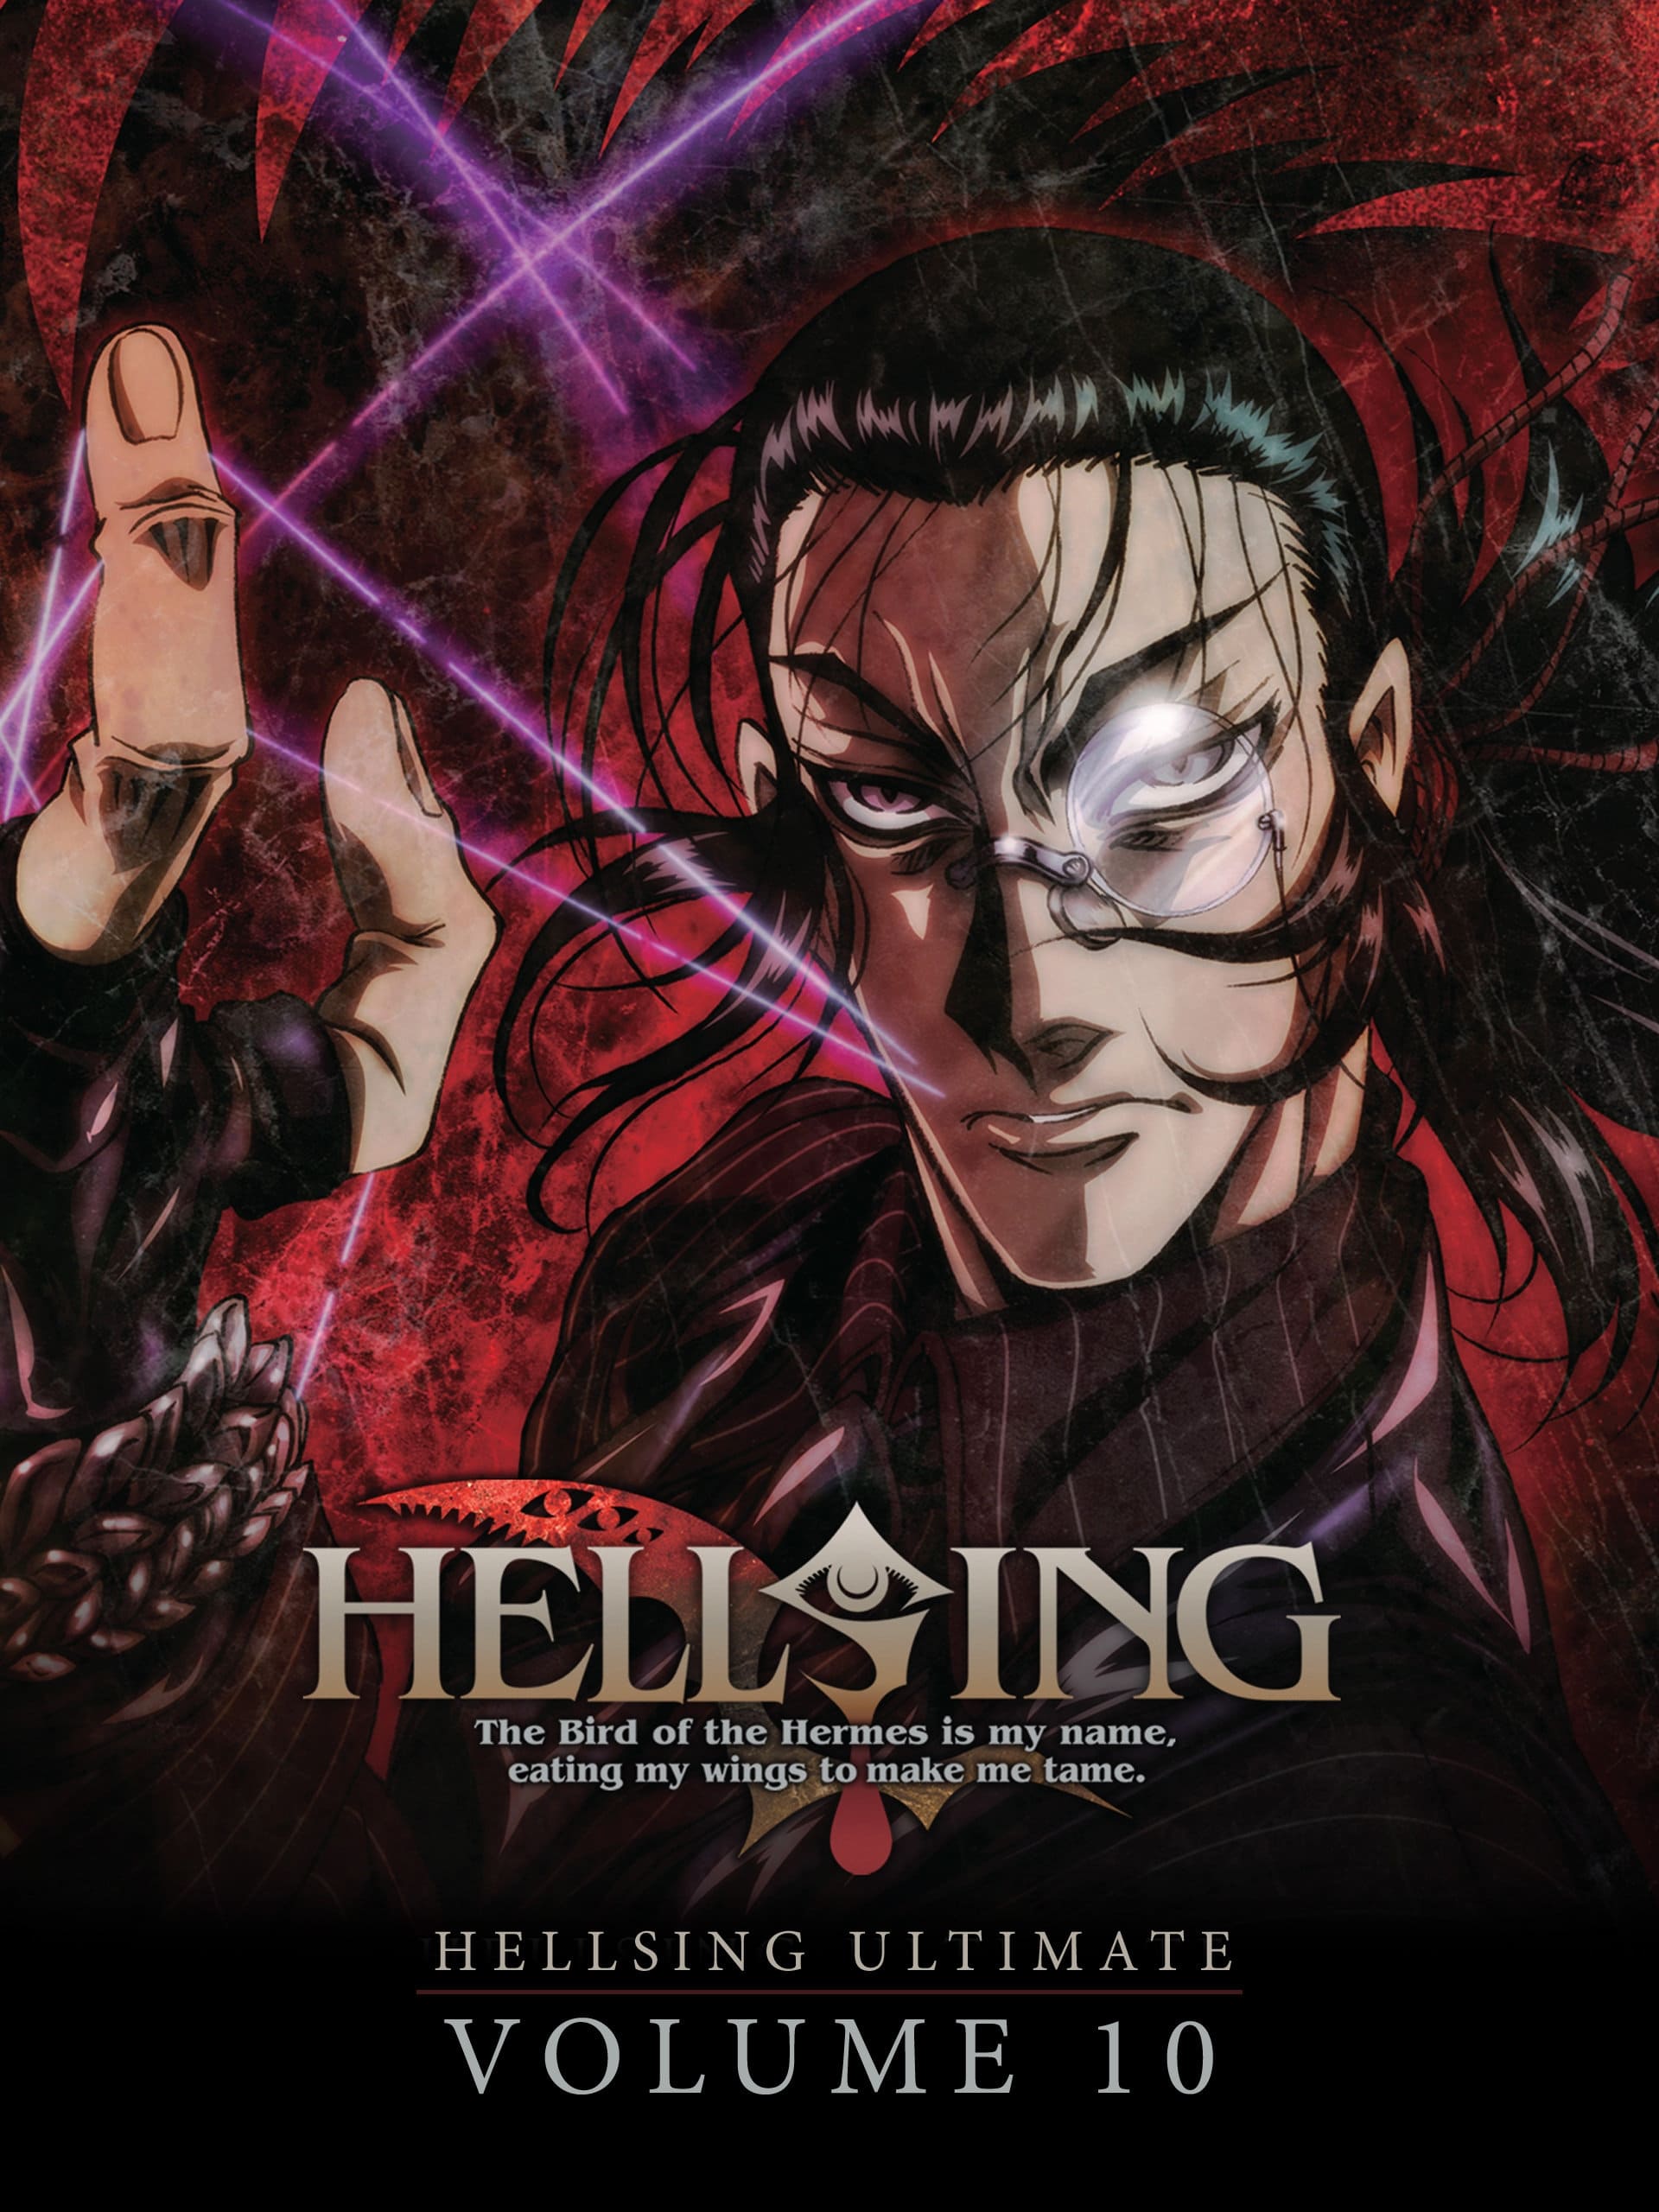 Hellsing Ultimate: Volume 10 film